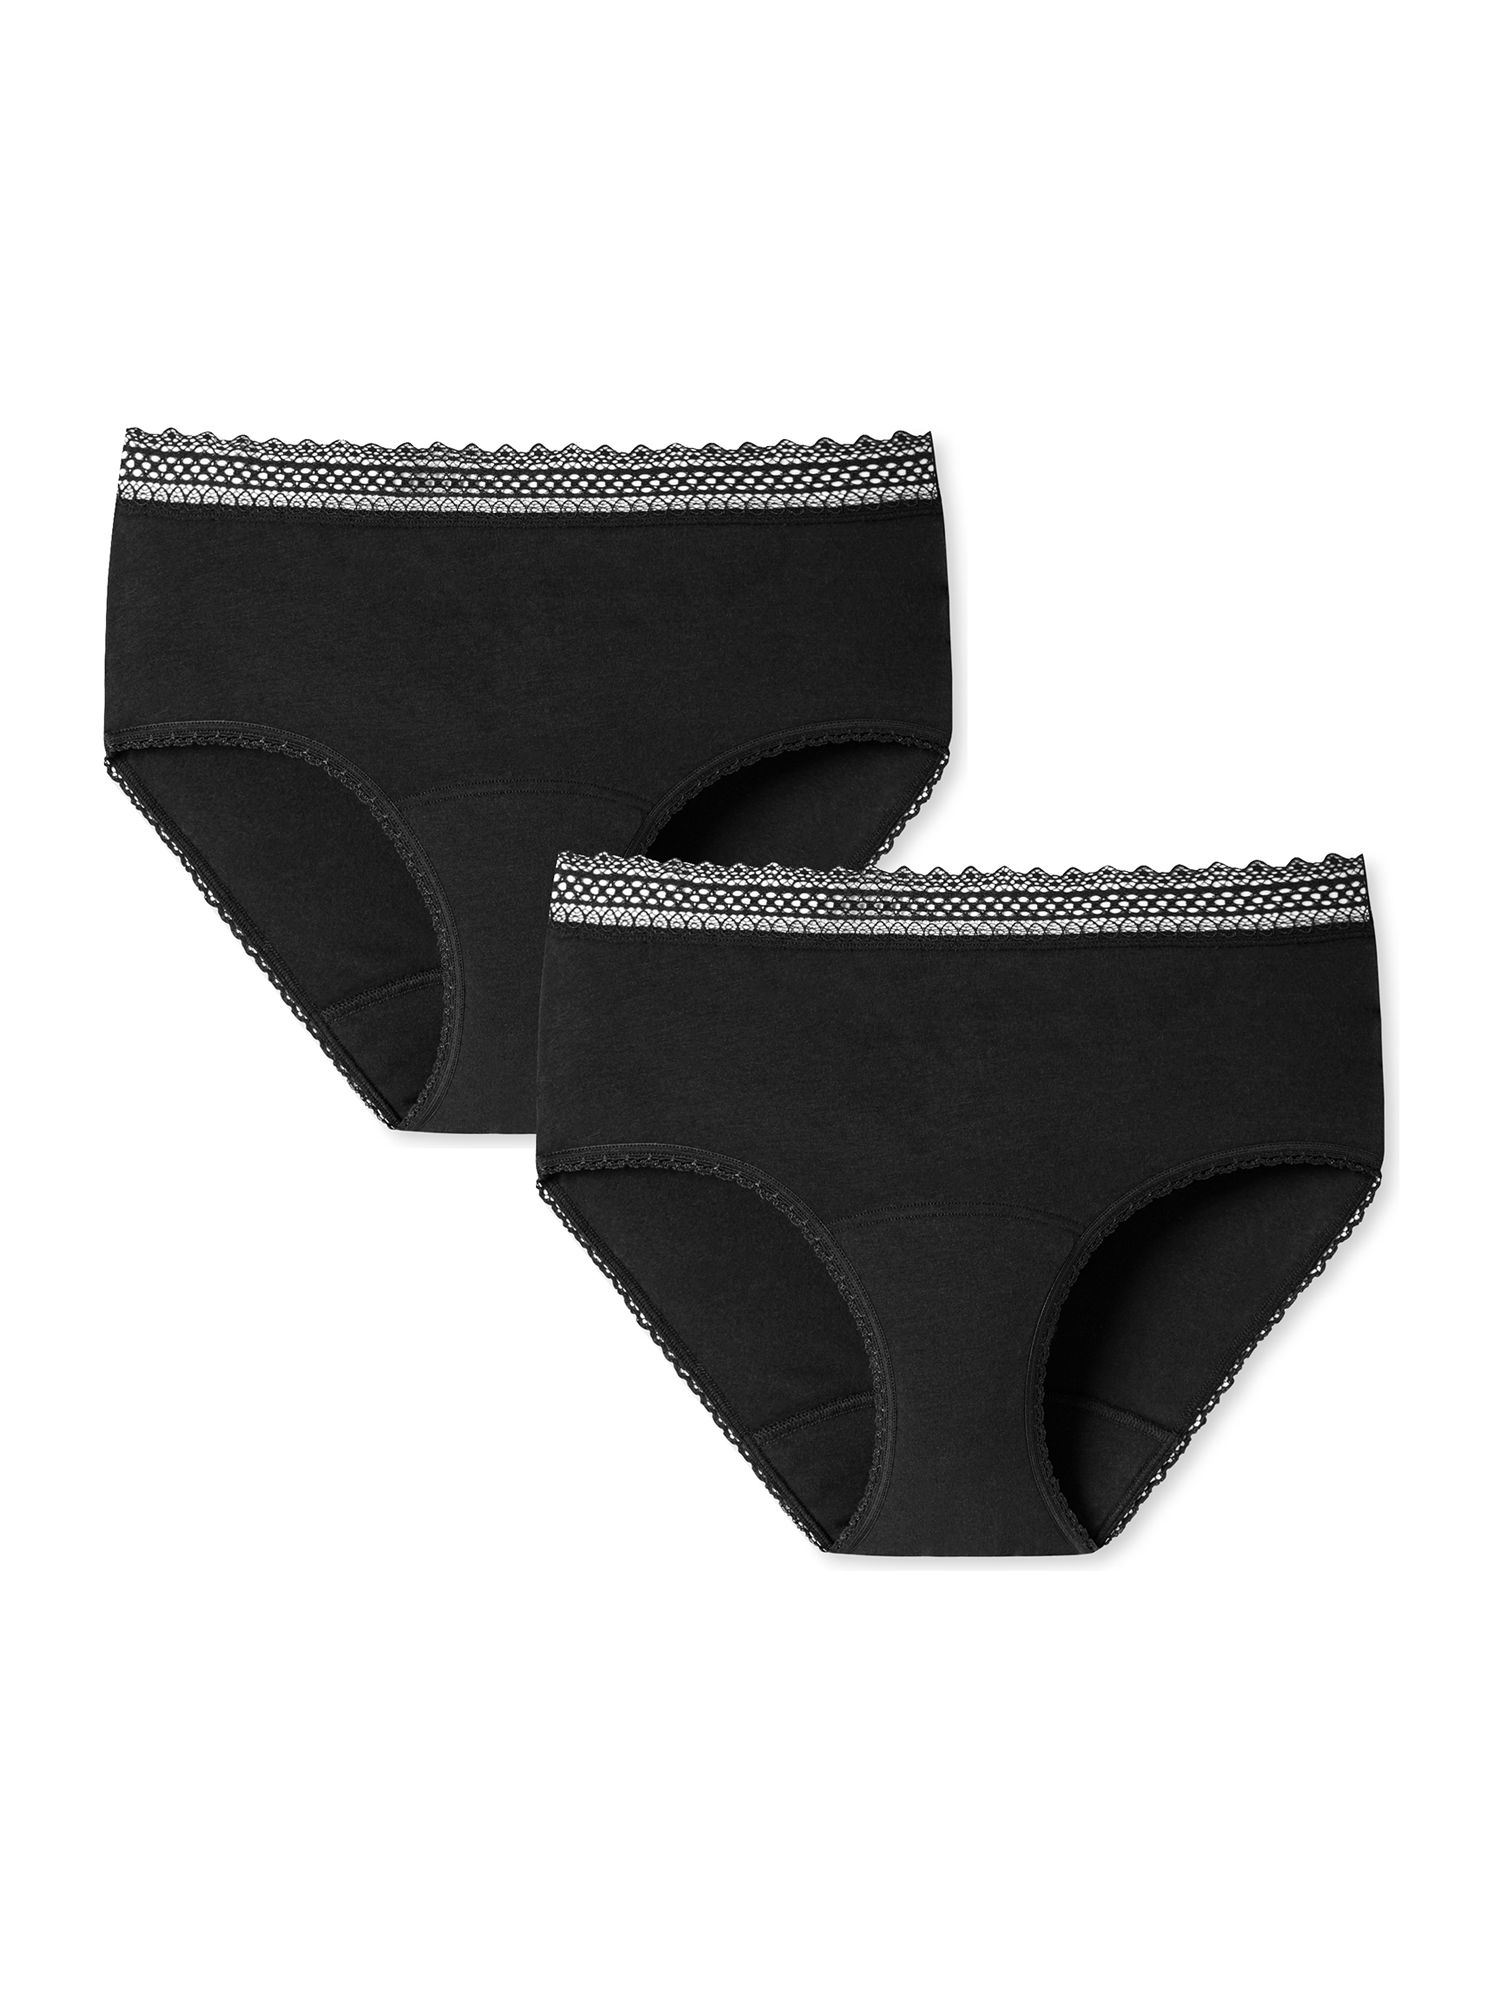 SCHIESSER Perioden-Panties - schwarz - Größe 42/44